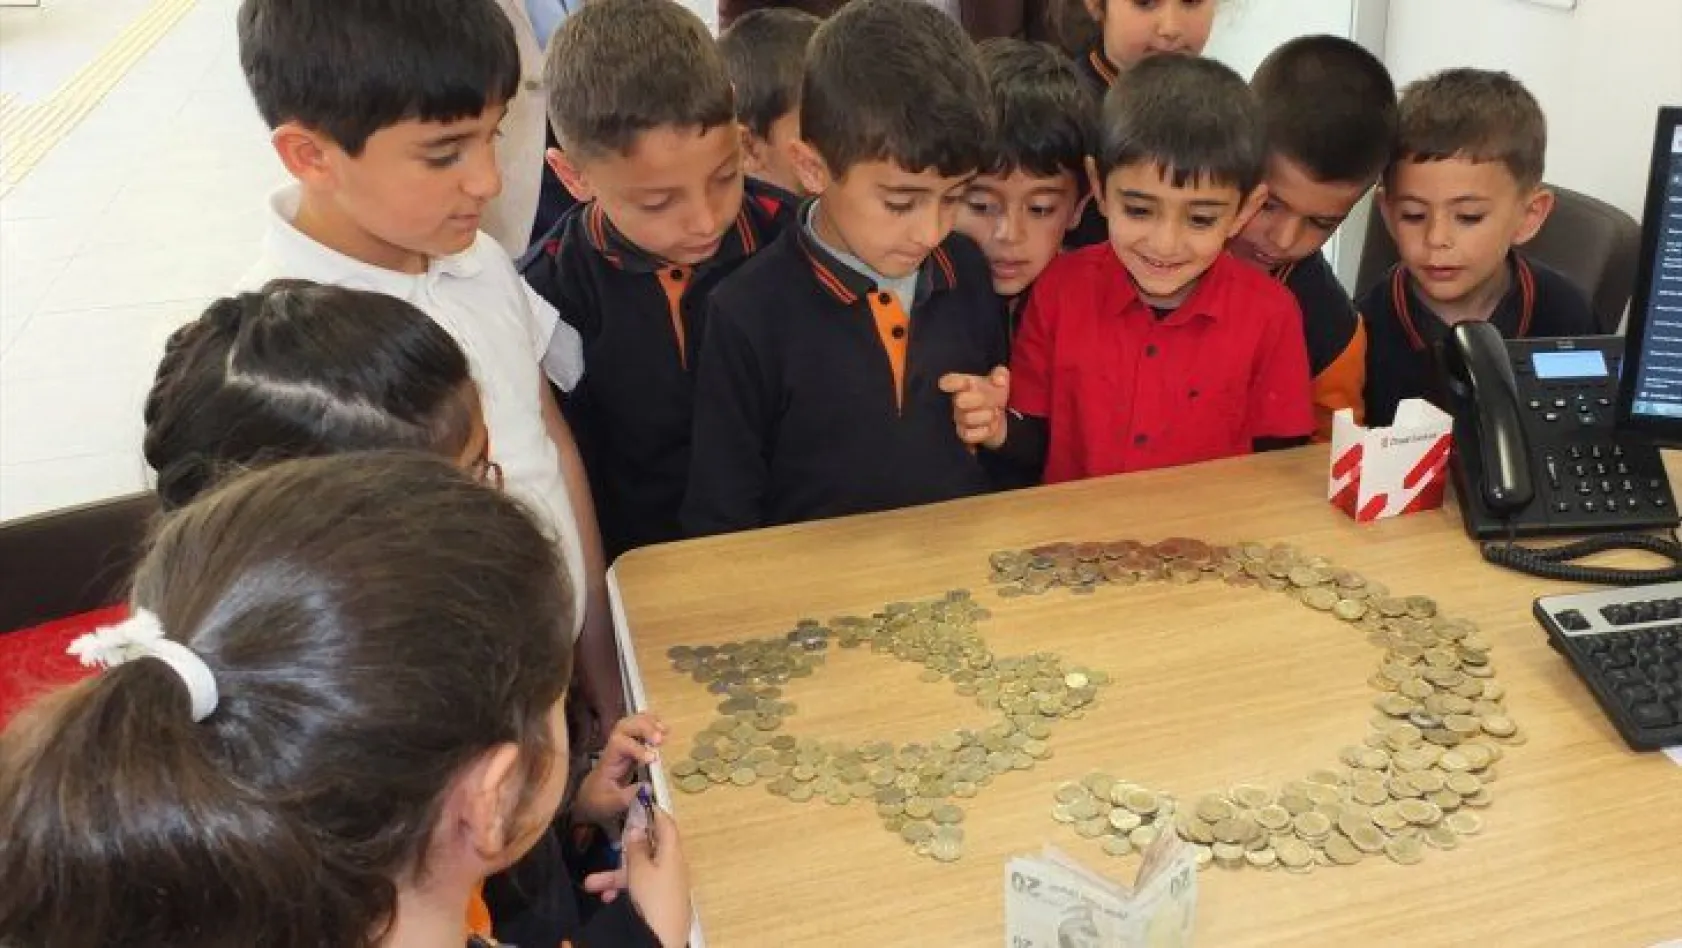 İlkokul öğrencilerinden Mehmetçik Vakfı'na bağış